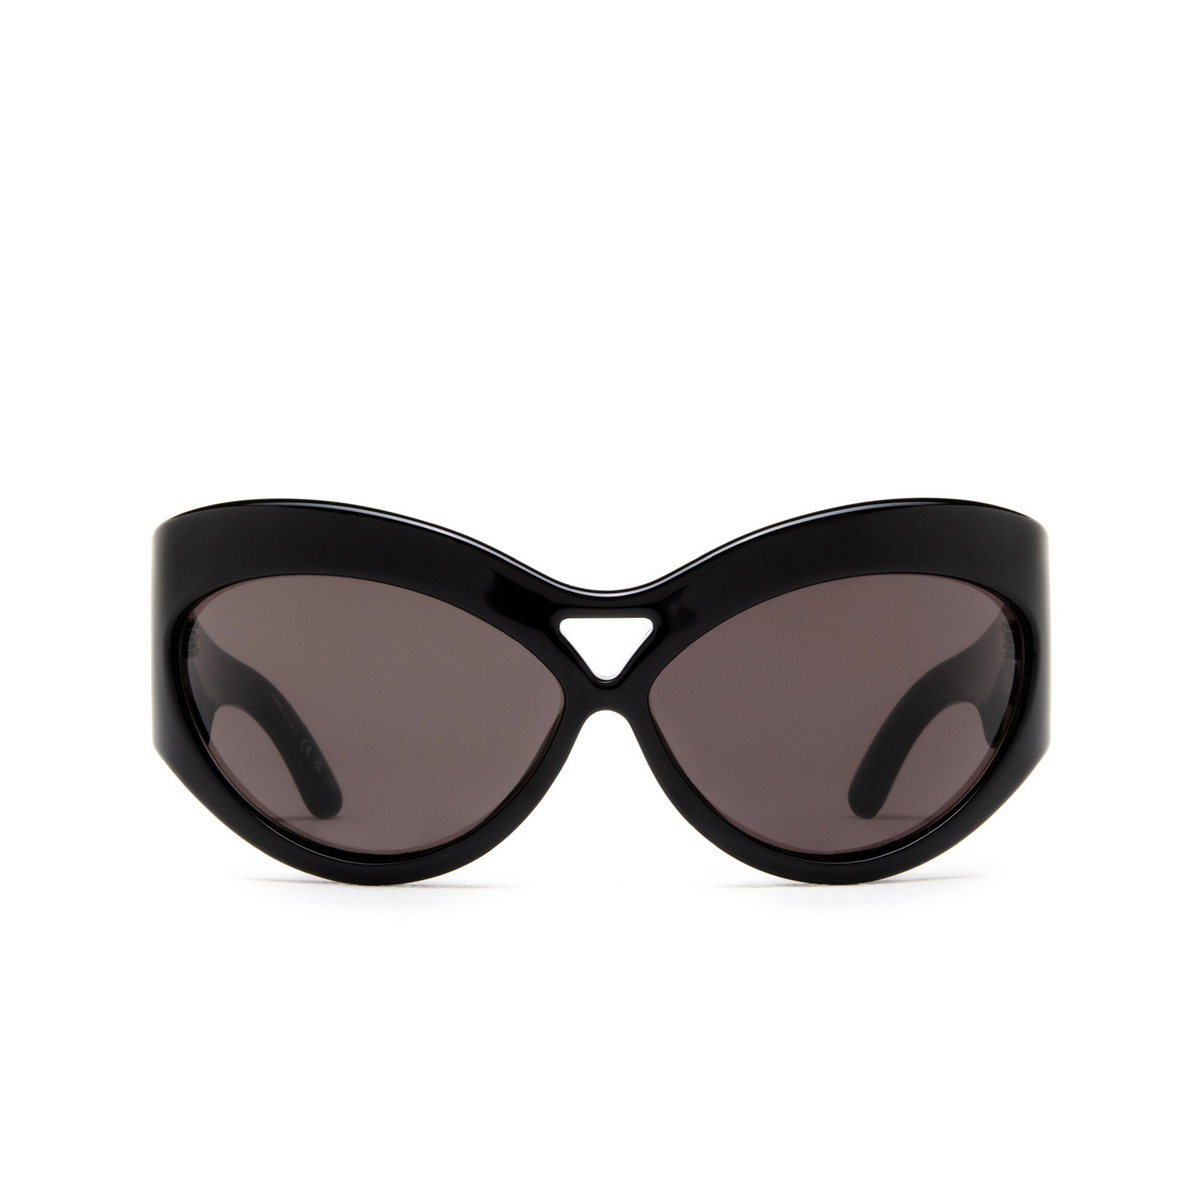 Saint Laurent SL 73 Sunglasses 001 Black - front view